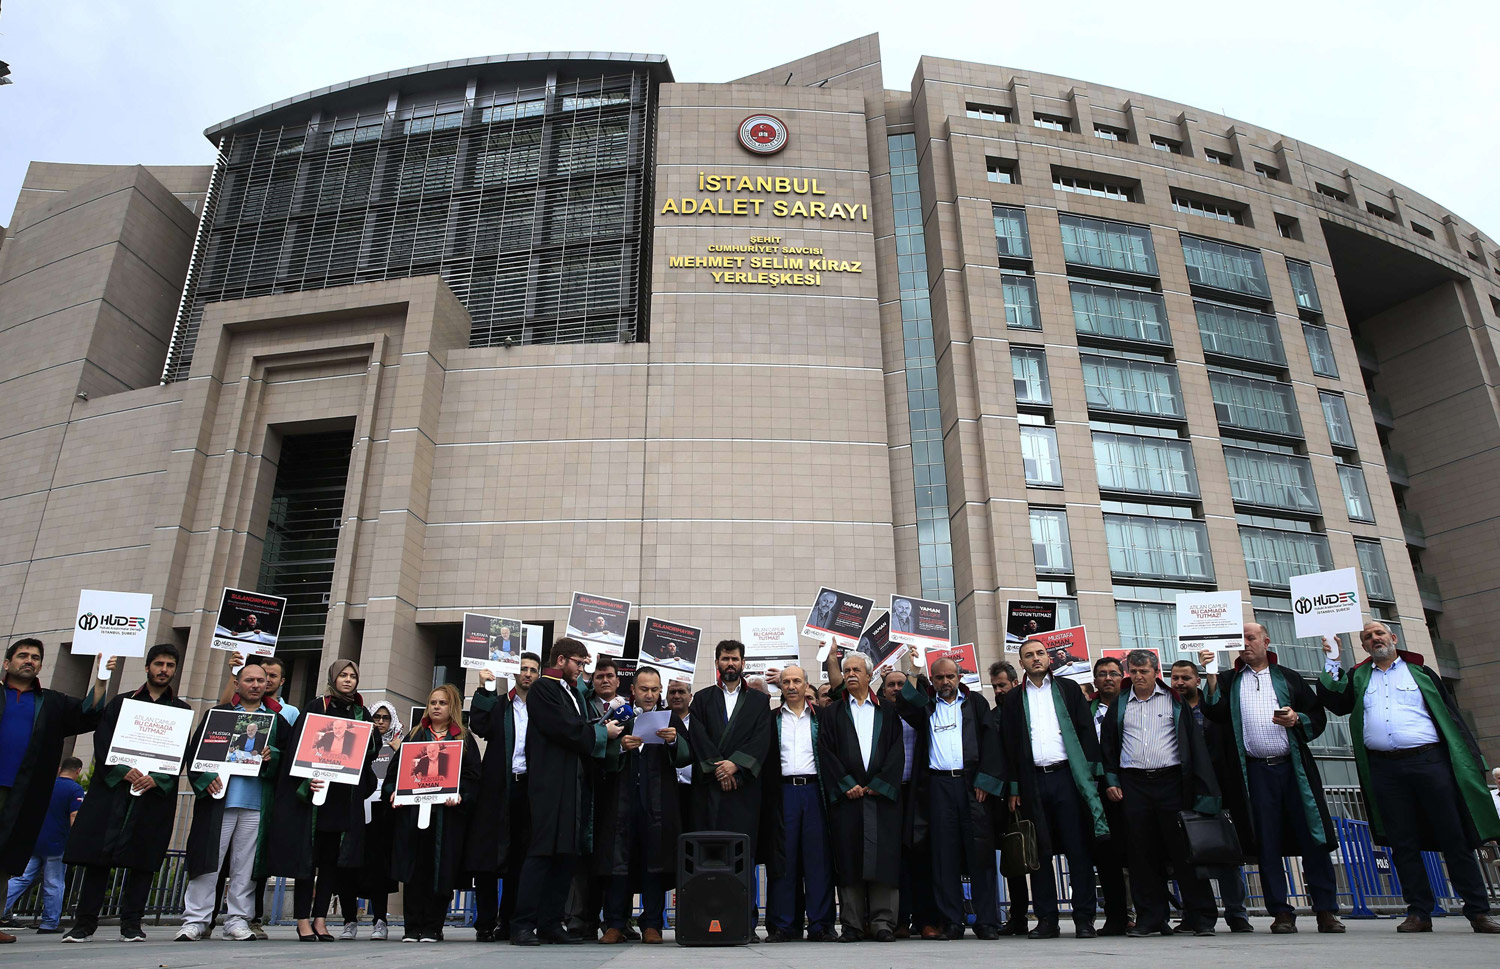 حملة تطهير غير مسبوقة شنها أردوغان ضد المحامين والقضاة منذ انقلاب 2016